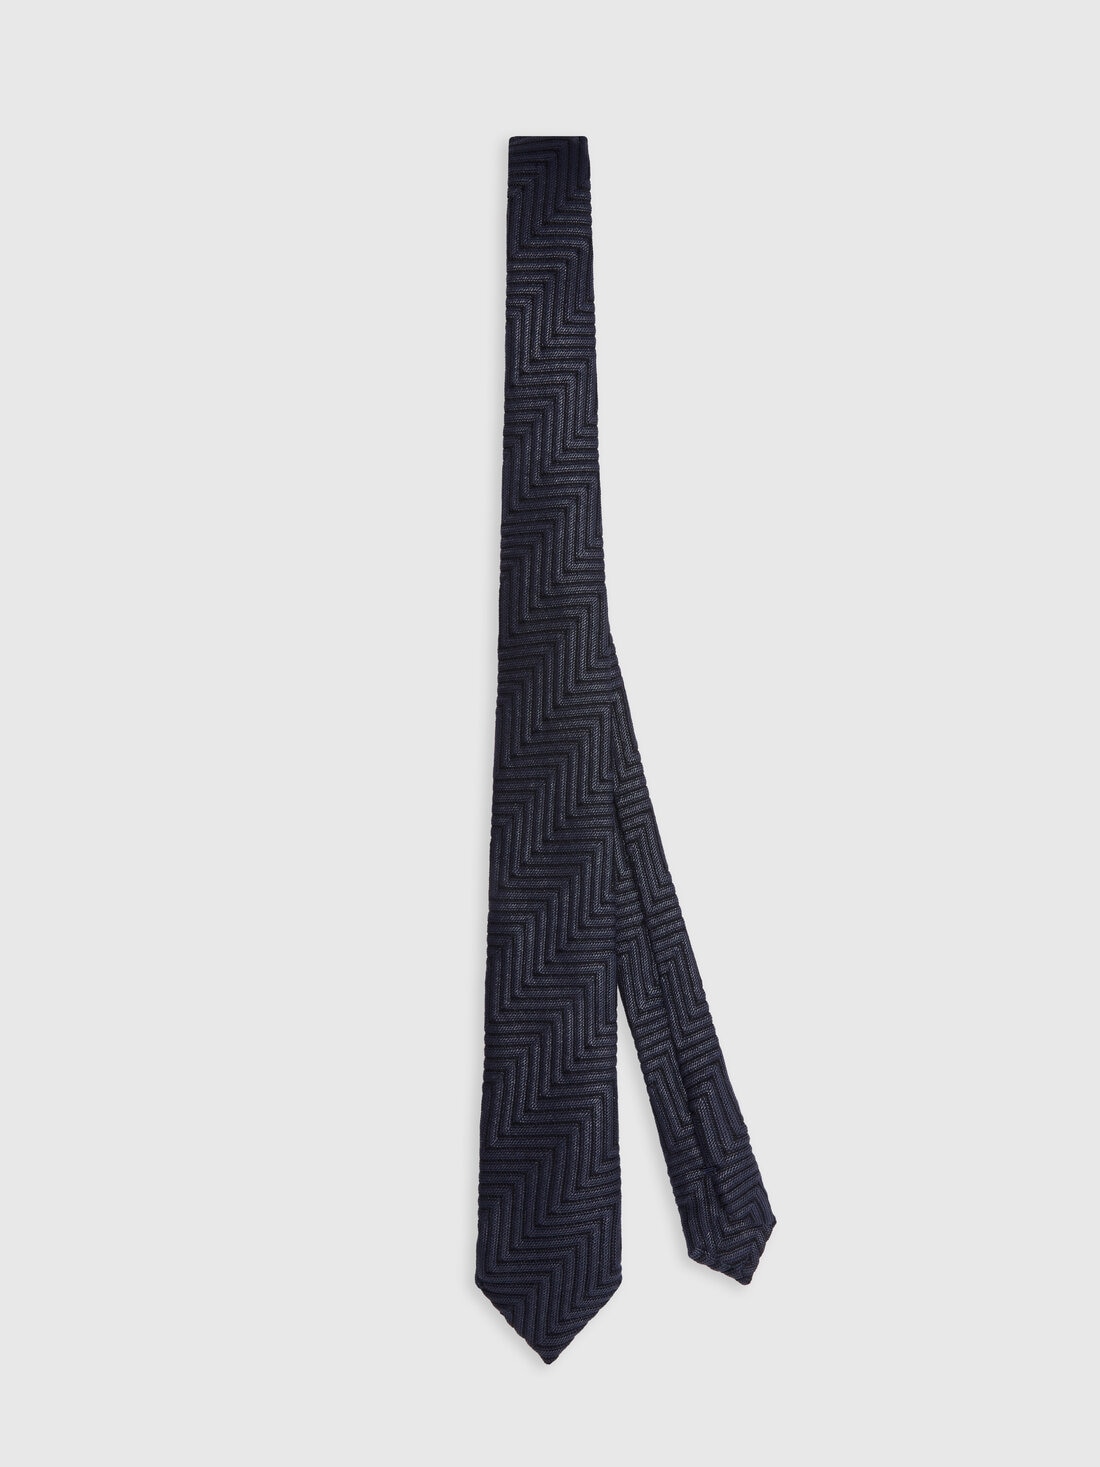 Cotton and viscose chevron tie, Multicoloured  - 8053147141824 - 0